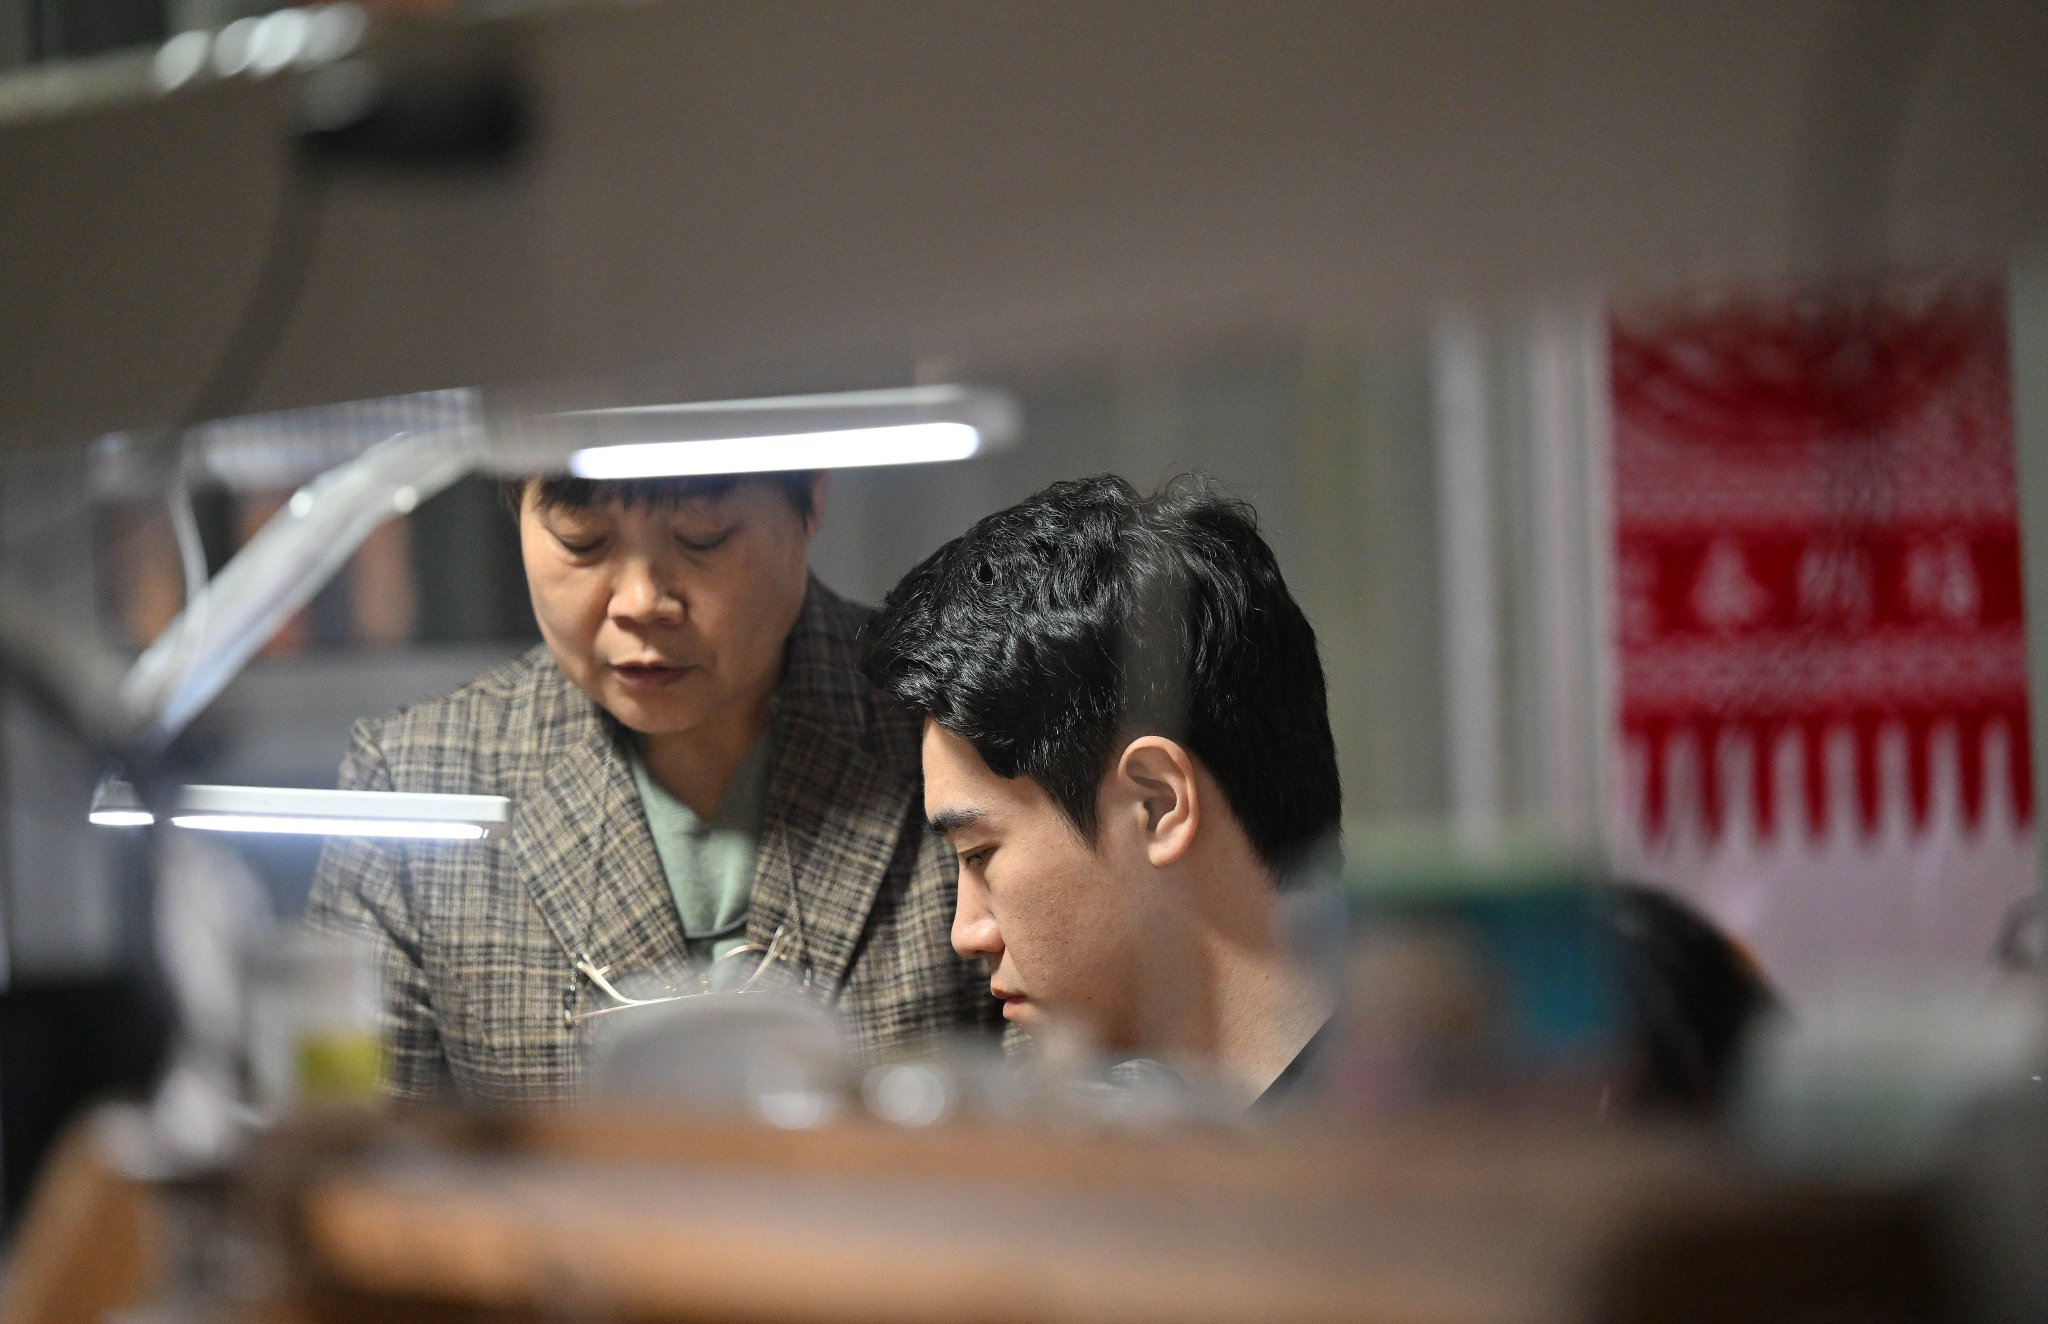 马赛（右）在工作室内和母亲交流制作技艺（3月19日摄）。新华社记者 李然 摄